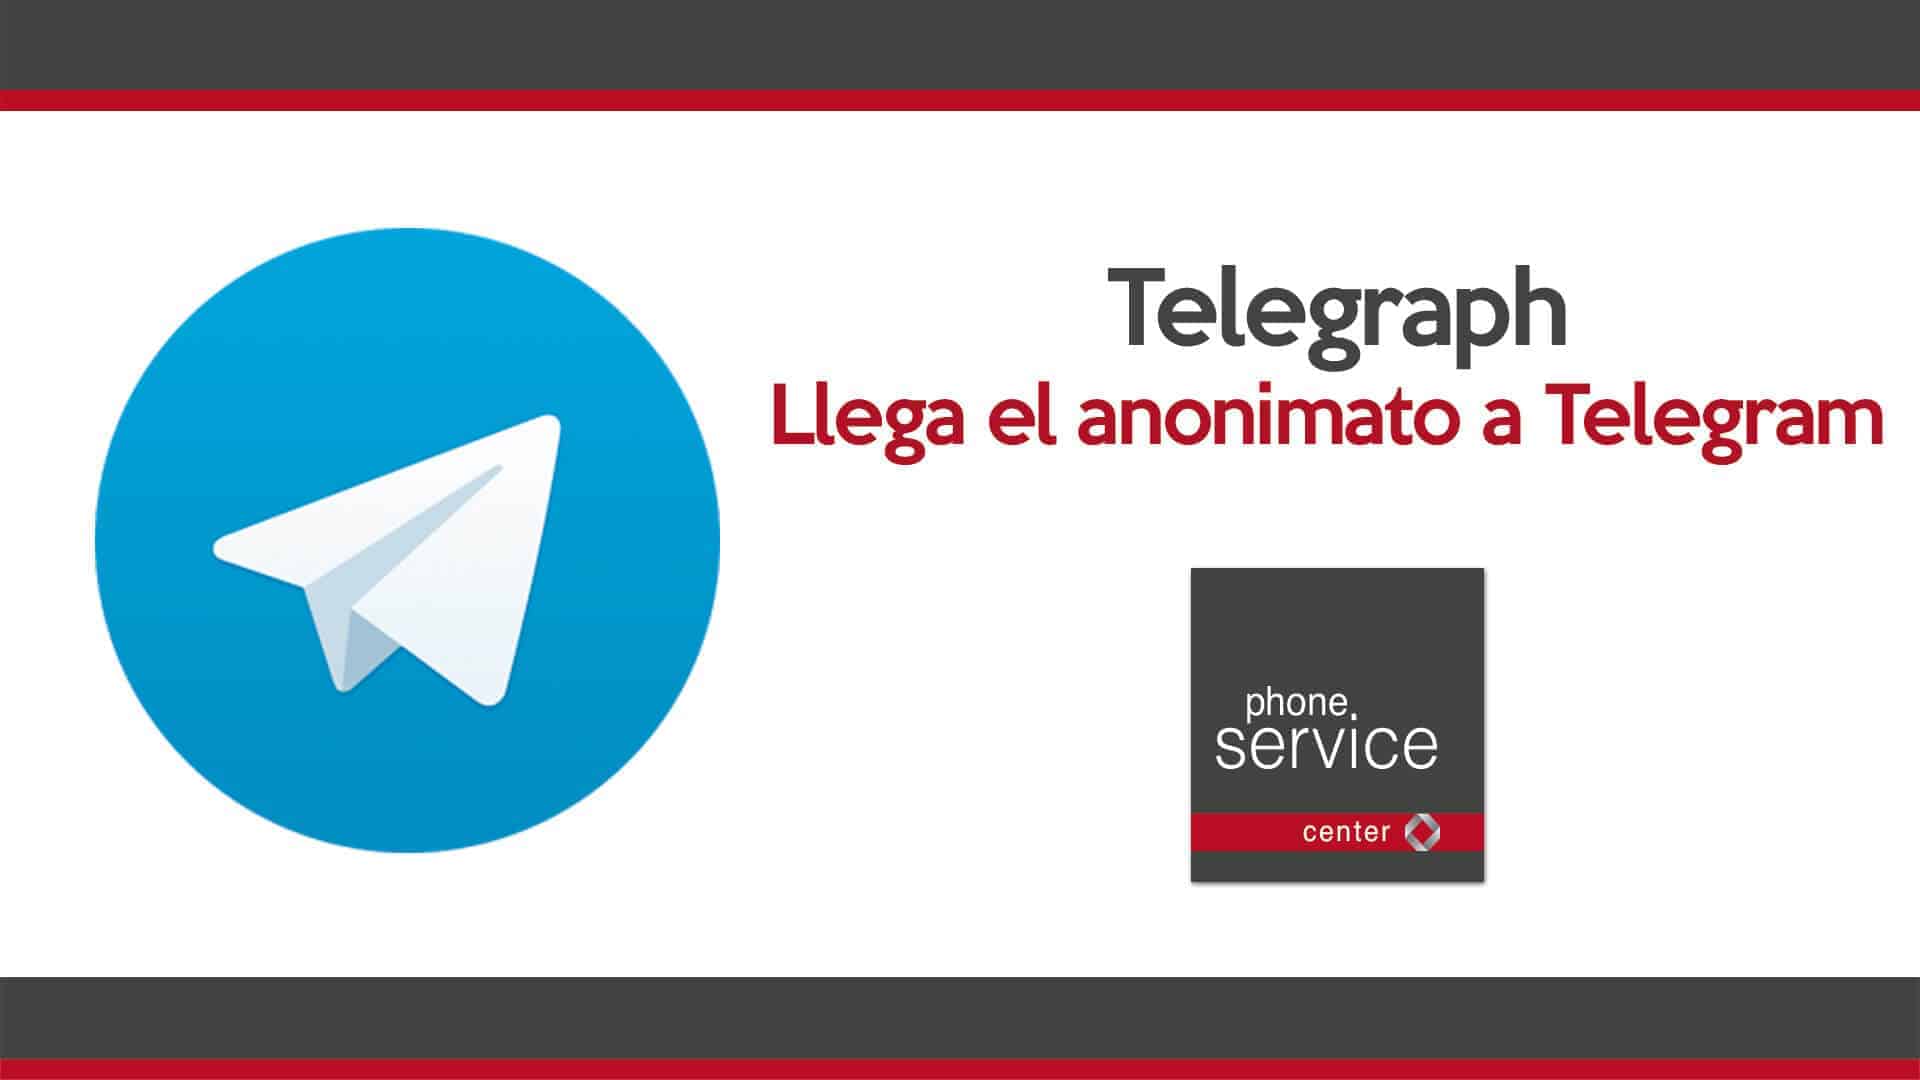 Telegraph es la plataforma de escritura anonima de Telegram